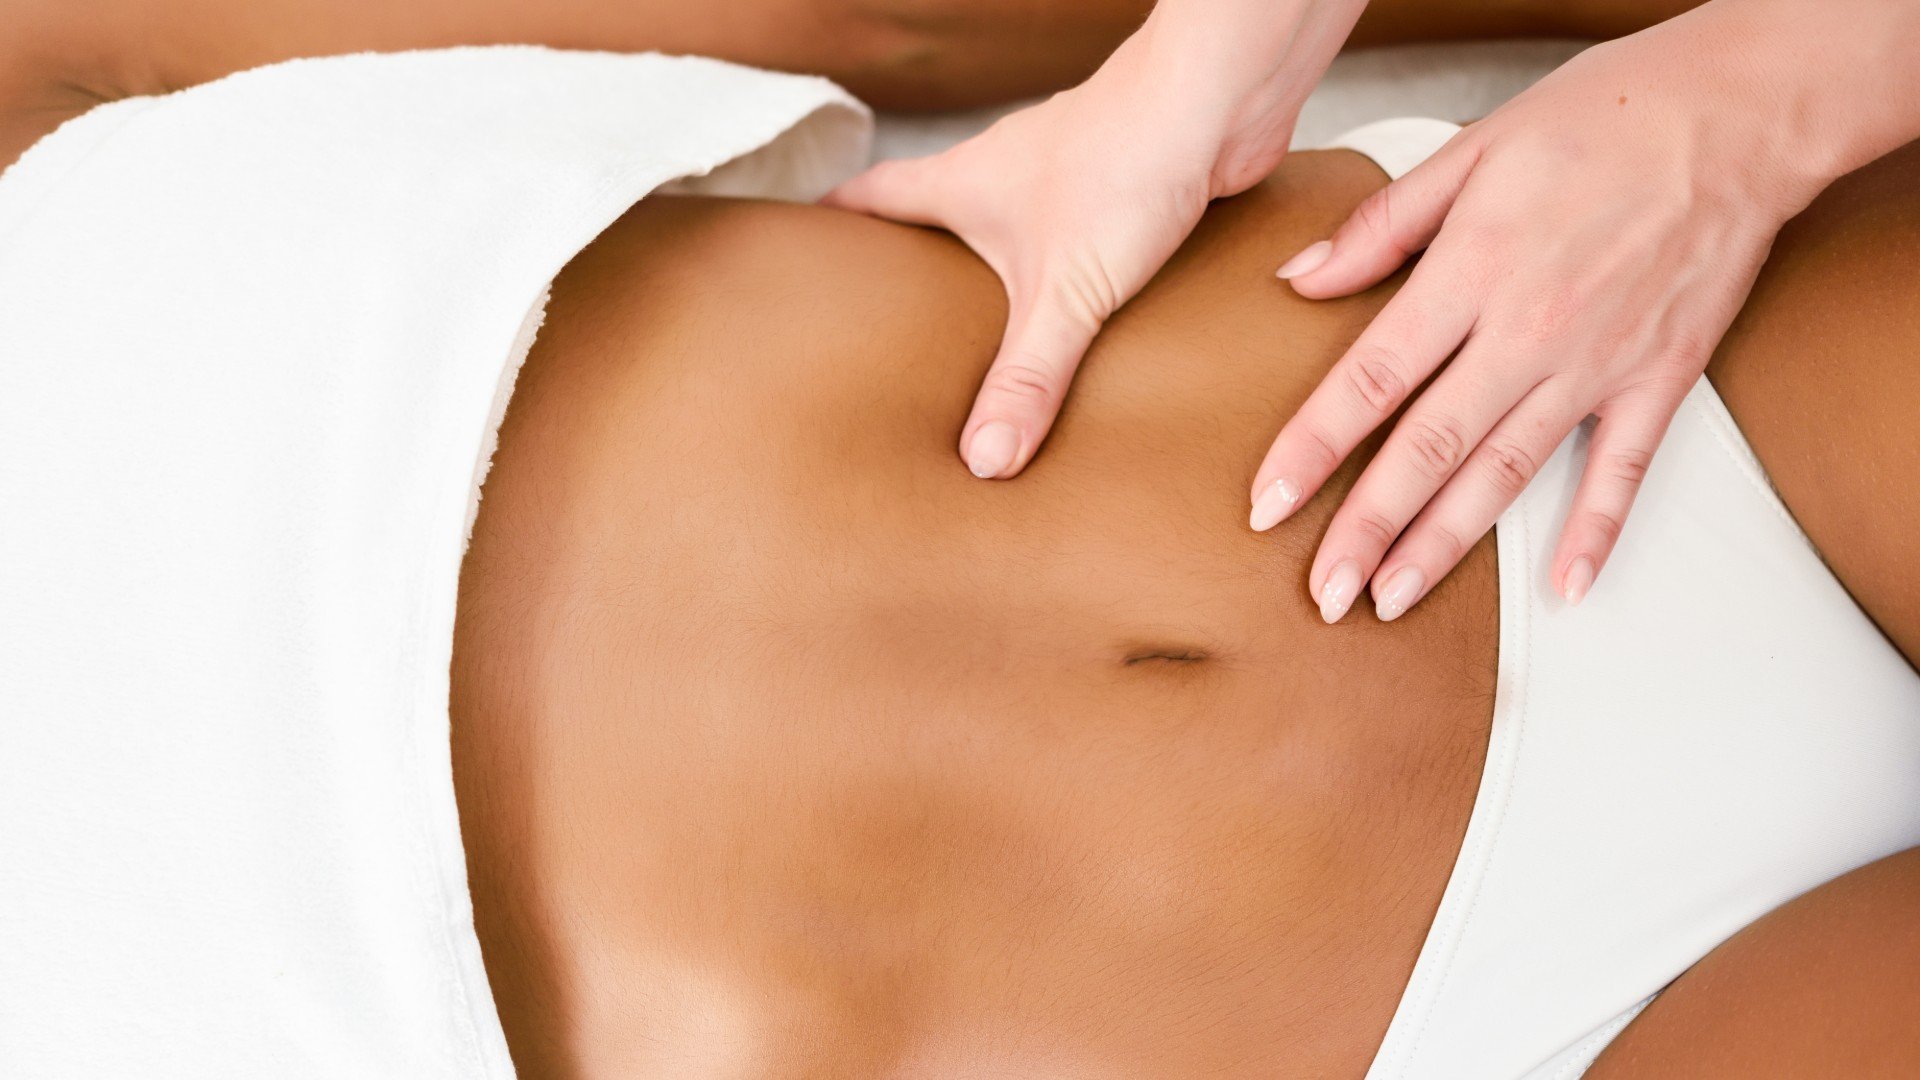 Foto de capa do artigo "Massagem modeladora: conheça o procedimento e os benefícios"